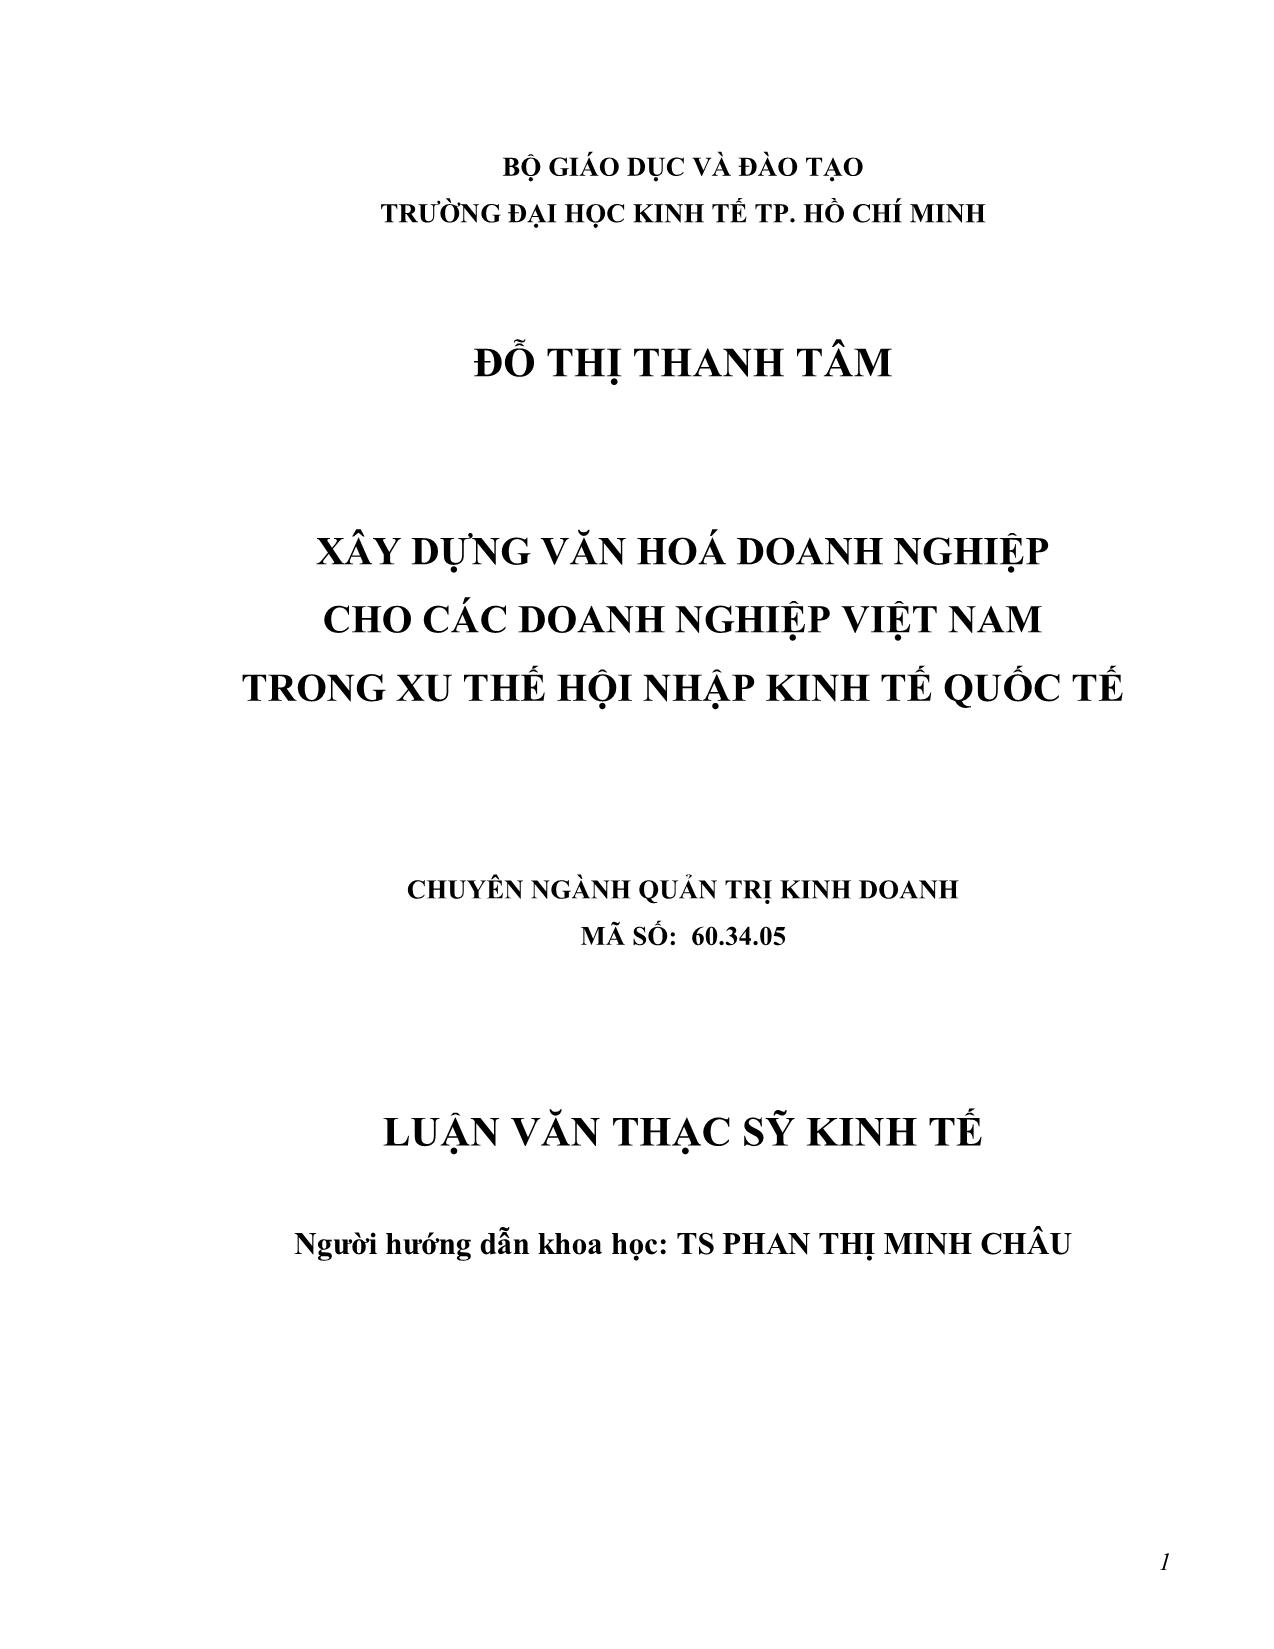 Luận văn Xây dựng văn hóa doanh nghiệp cho các doanh nghiệp Việt Nam trong xu thế hội nhập kinh tế quốc tế trang 1